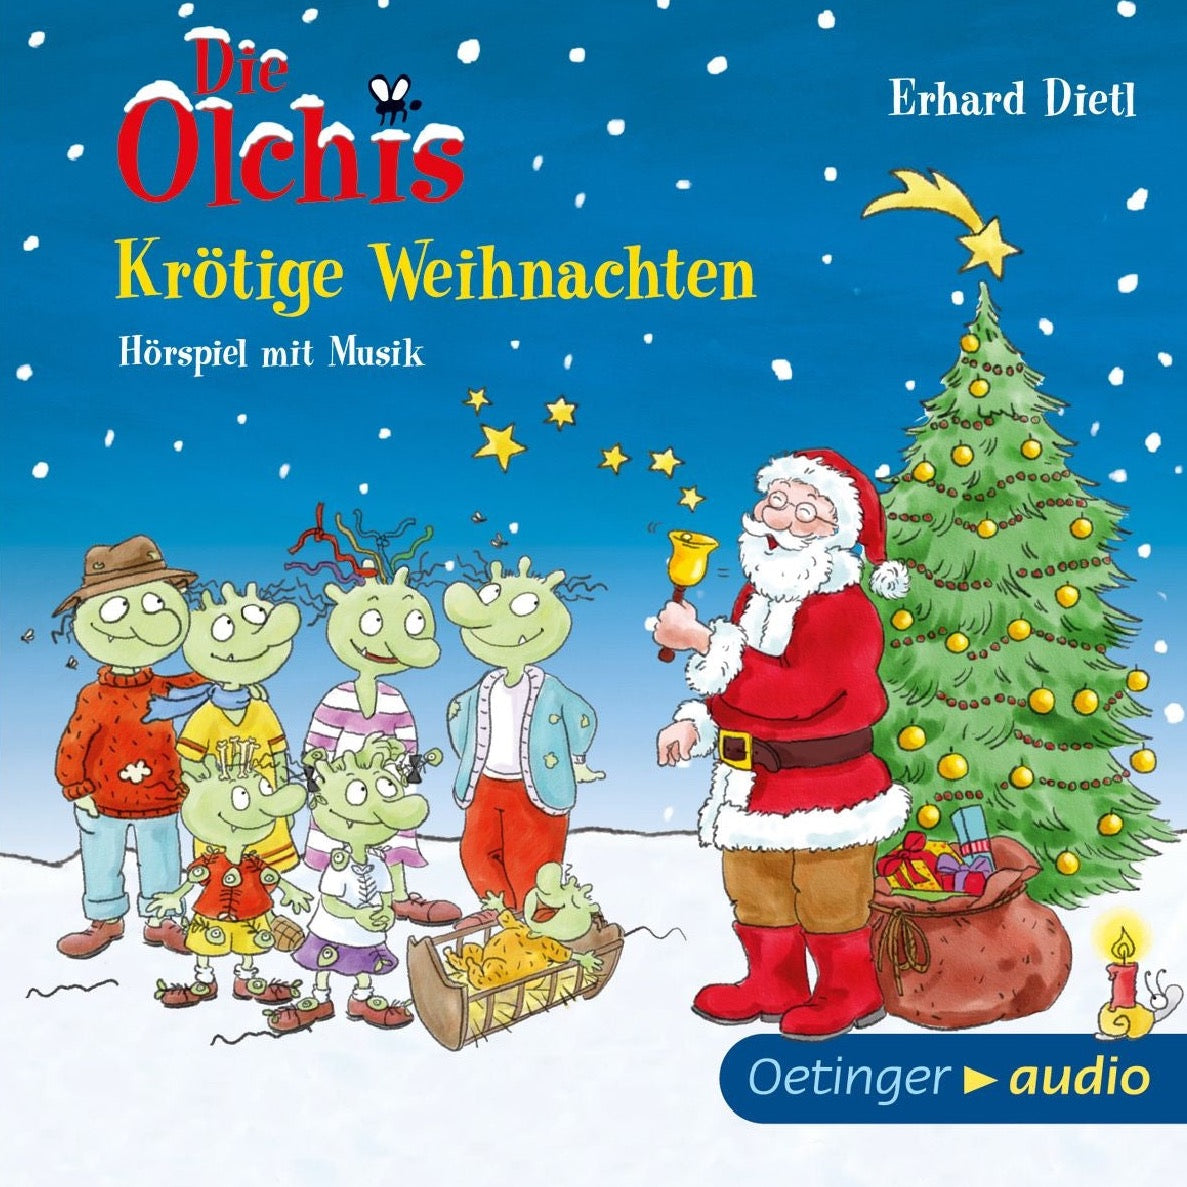 Erhard Dietl - Die Olchis - Krötige Weihnachten